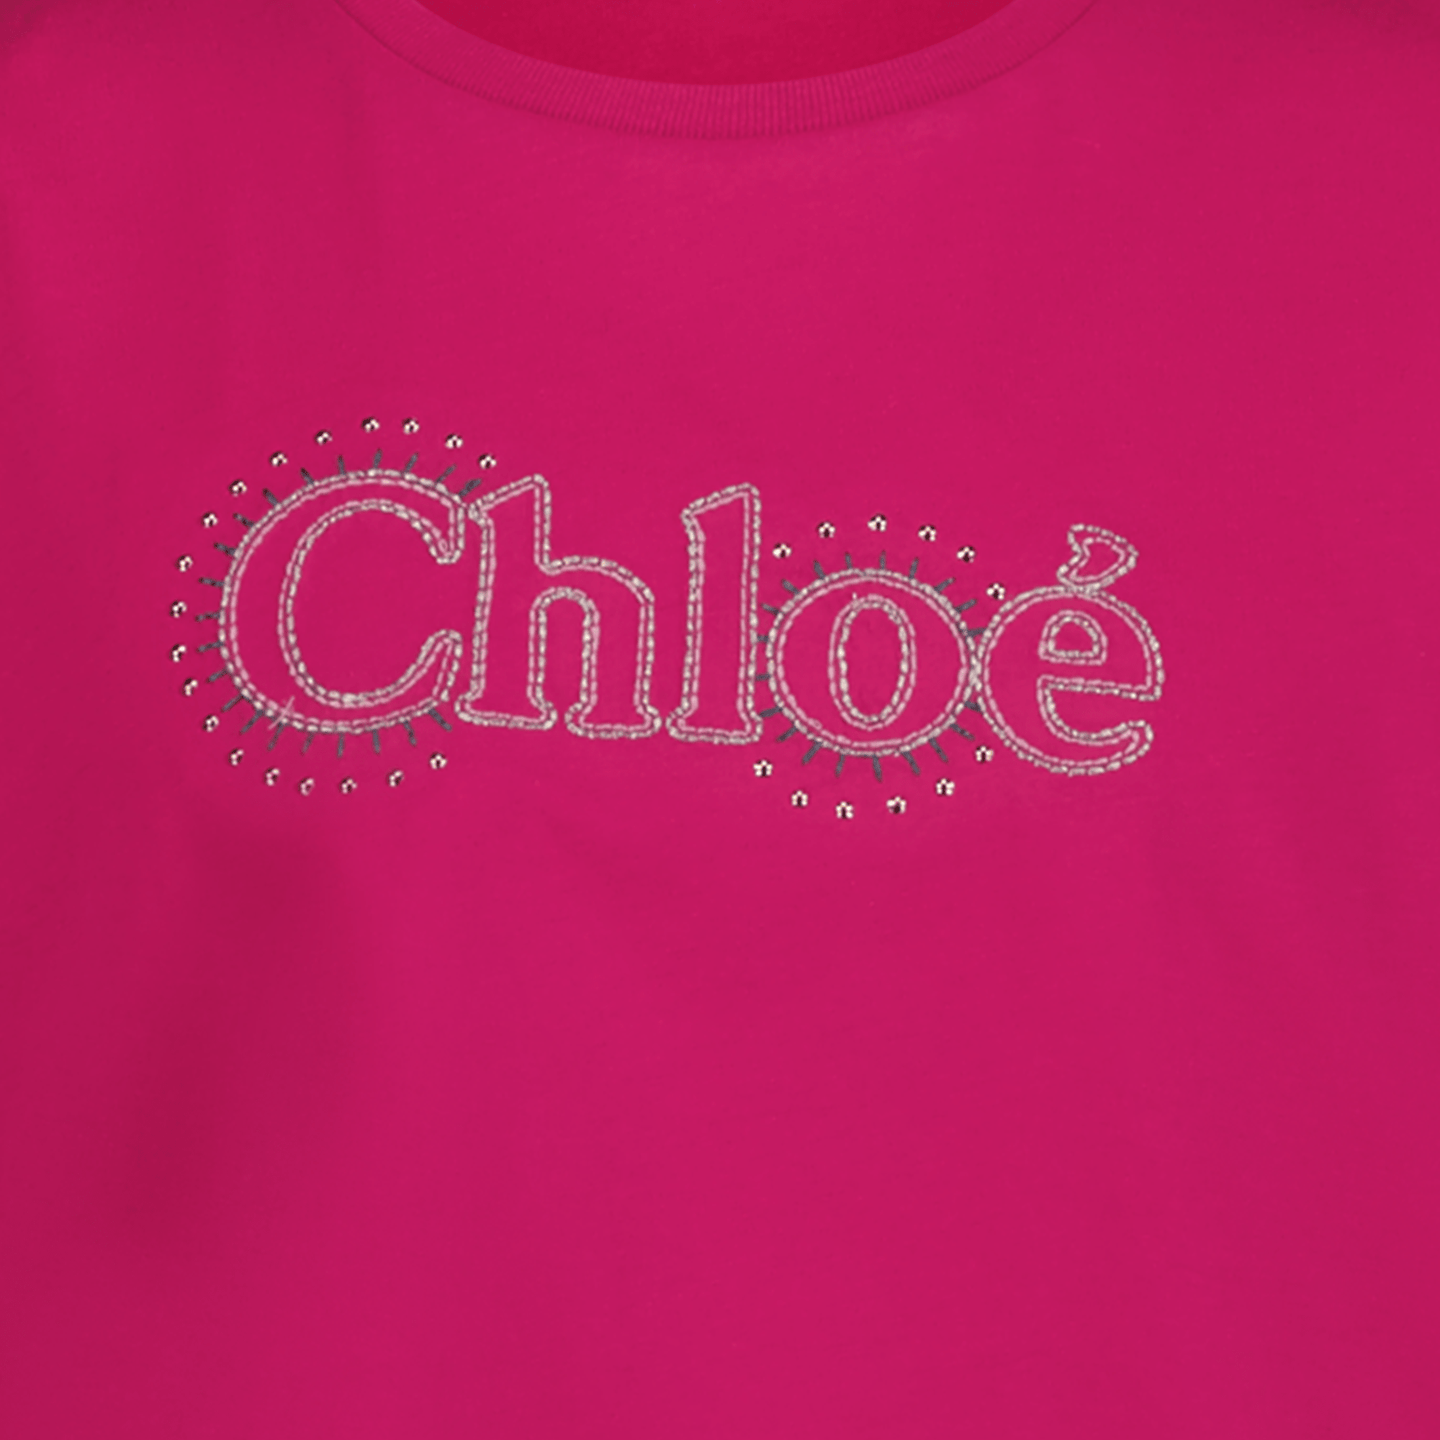 Chloe Kinder Meisjes T-Shirt Fuchsia 4Y